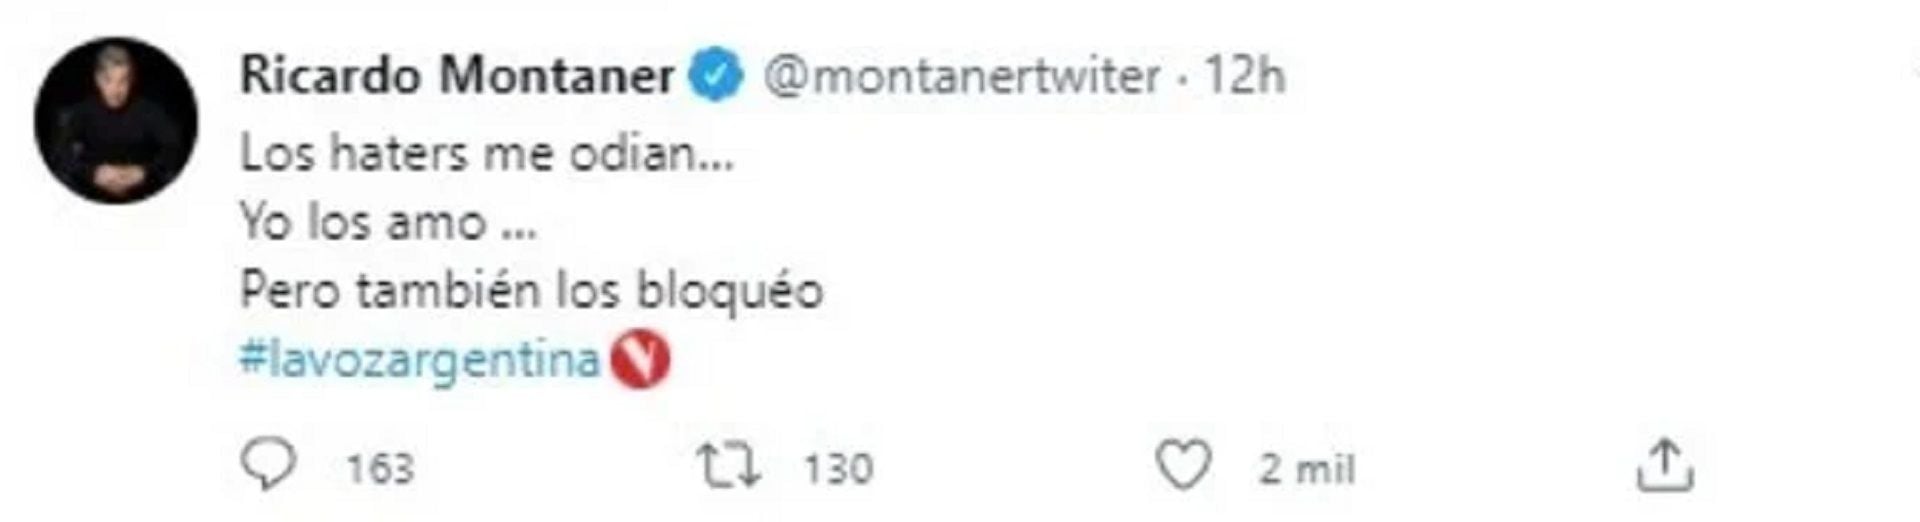 Los tuit de Ricardo Montaner que luego borró